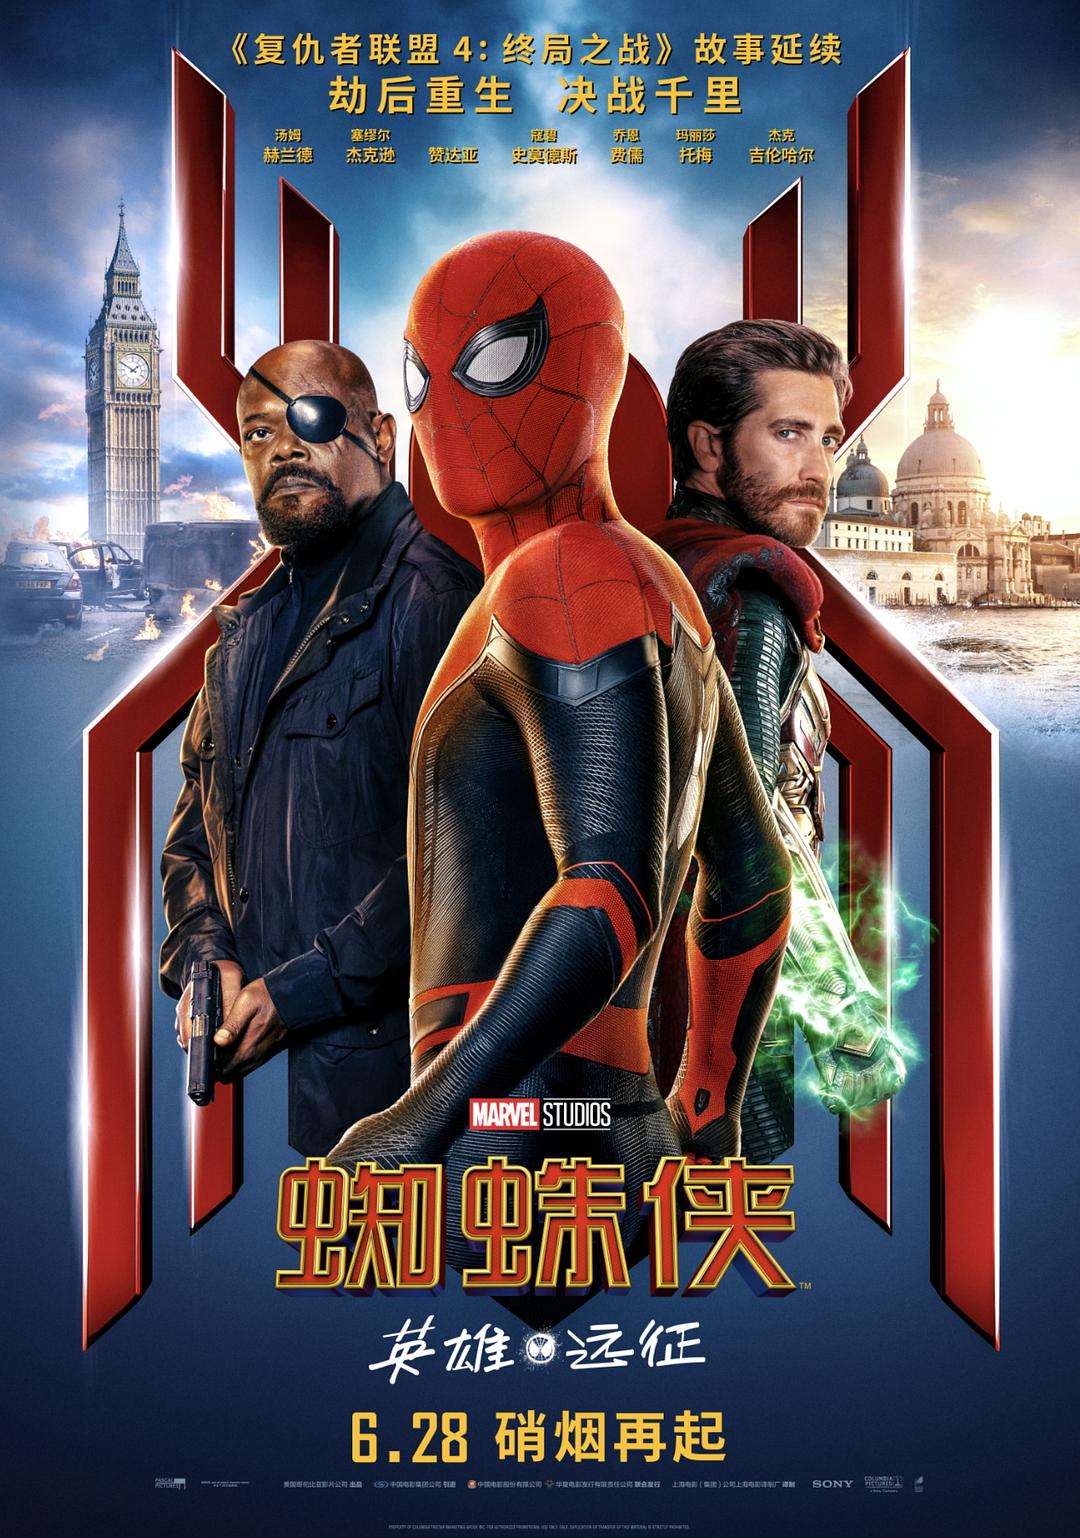 蜘蛛侠:豪杰远征/新蜘蛛侠2 Spider-Man.Far.from.Home.2019.1080p.3D.BluRay.Half-SBS.x264.DTS-HD.MA.7.1-FGT 18.82GB-1.png